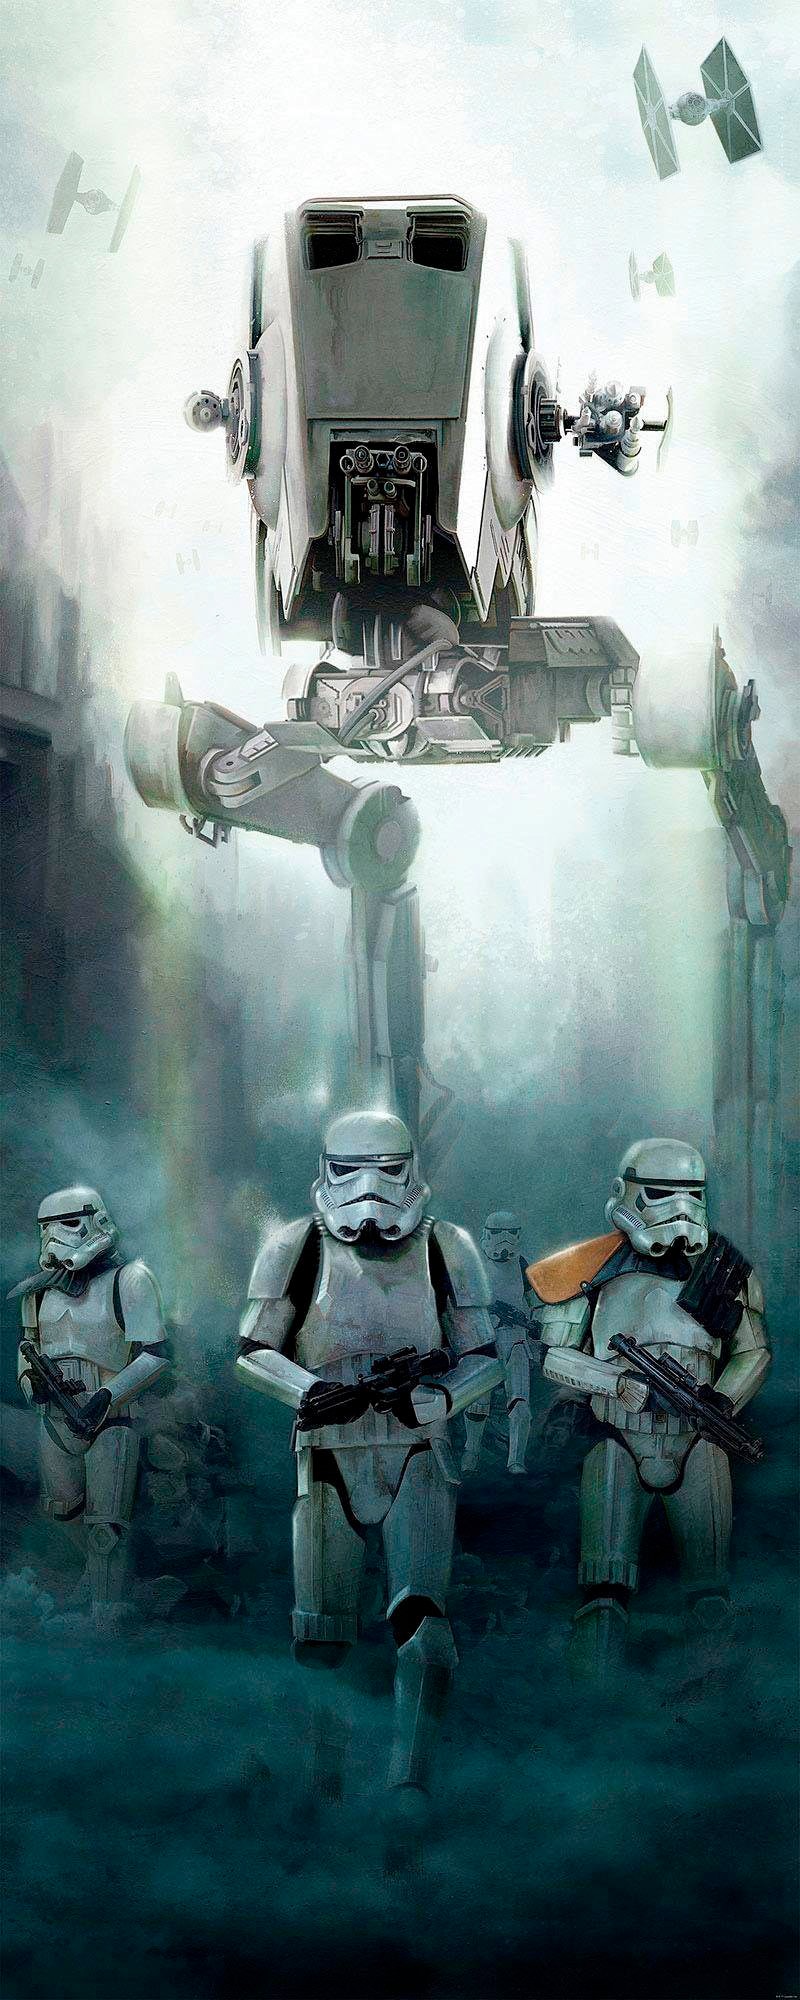 Komar Vliestapete "Star Wars Imperial Forces", 100x250 cm (Breite x Höhe), Vliestapete, 100 cm Bahnbreite